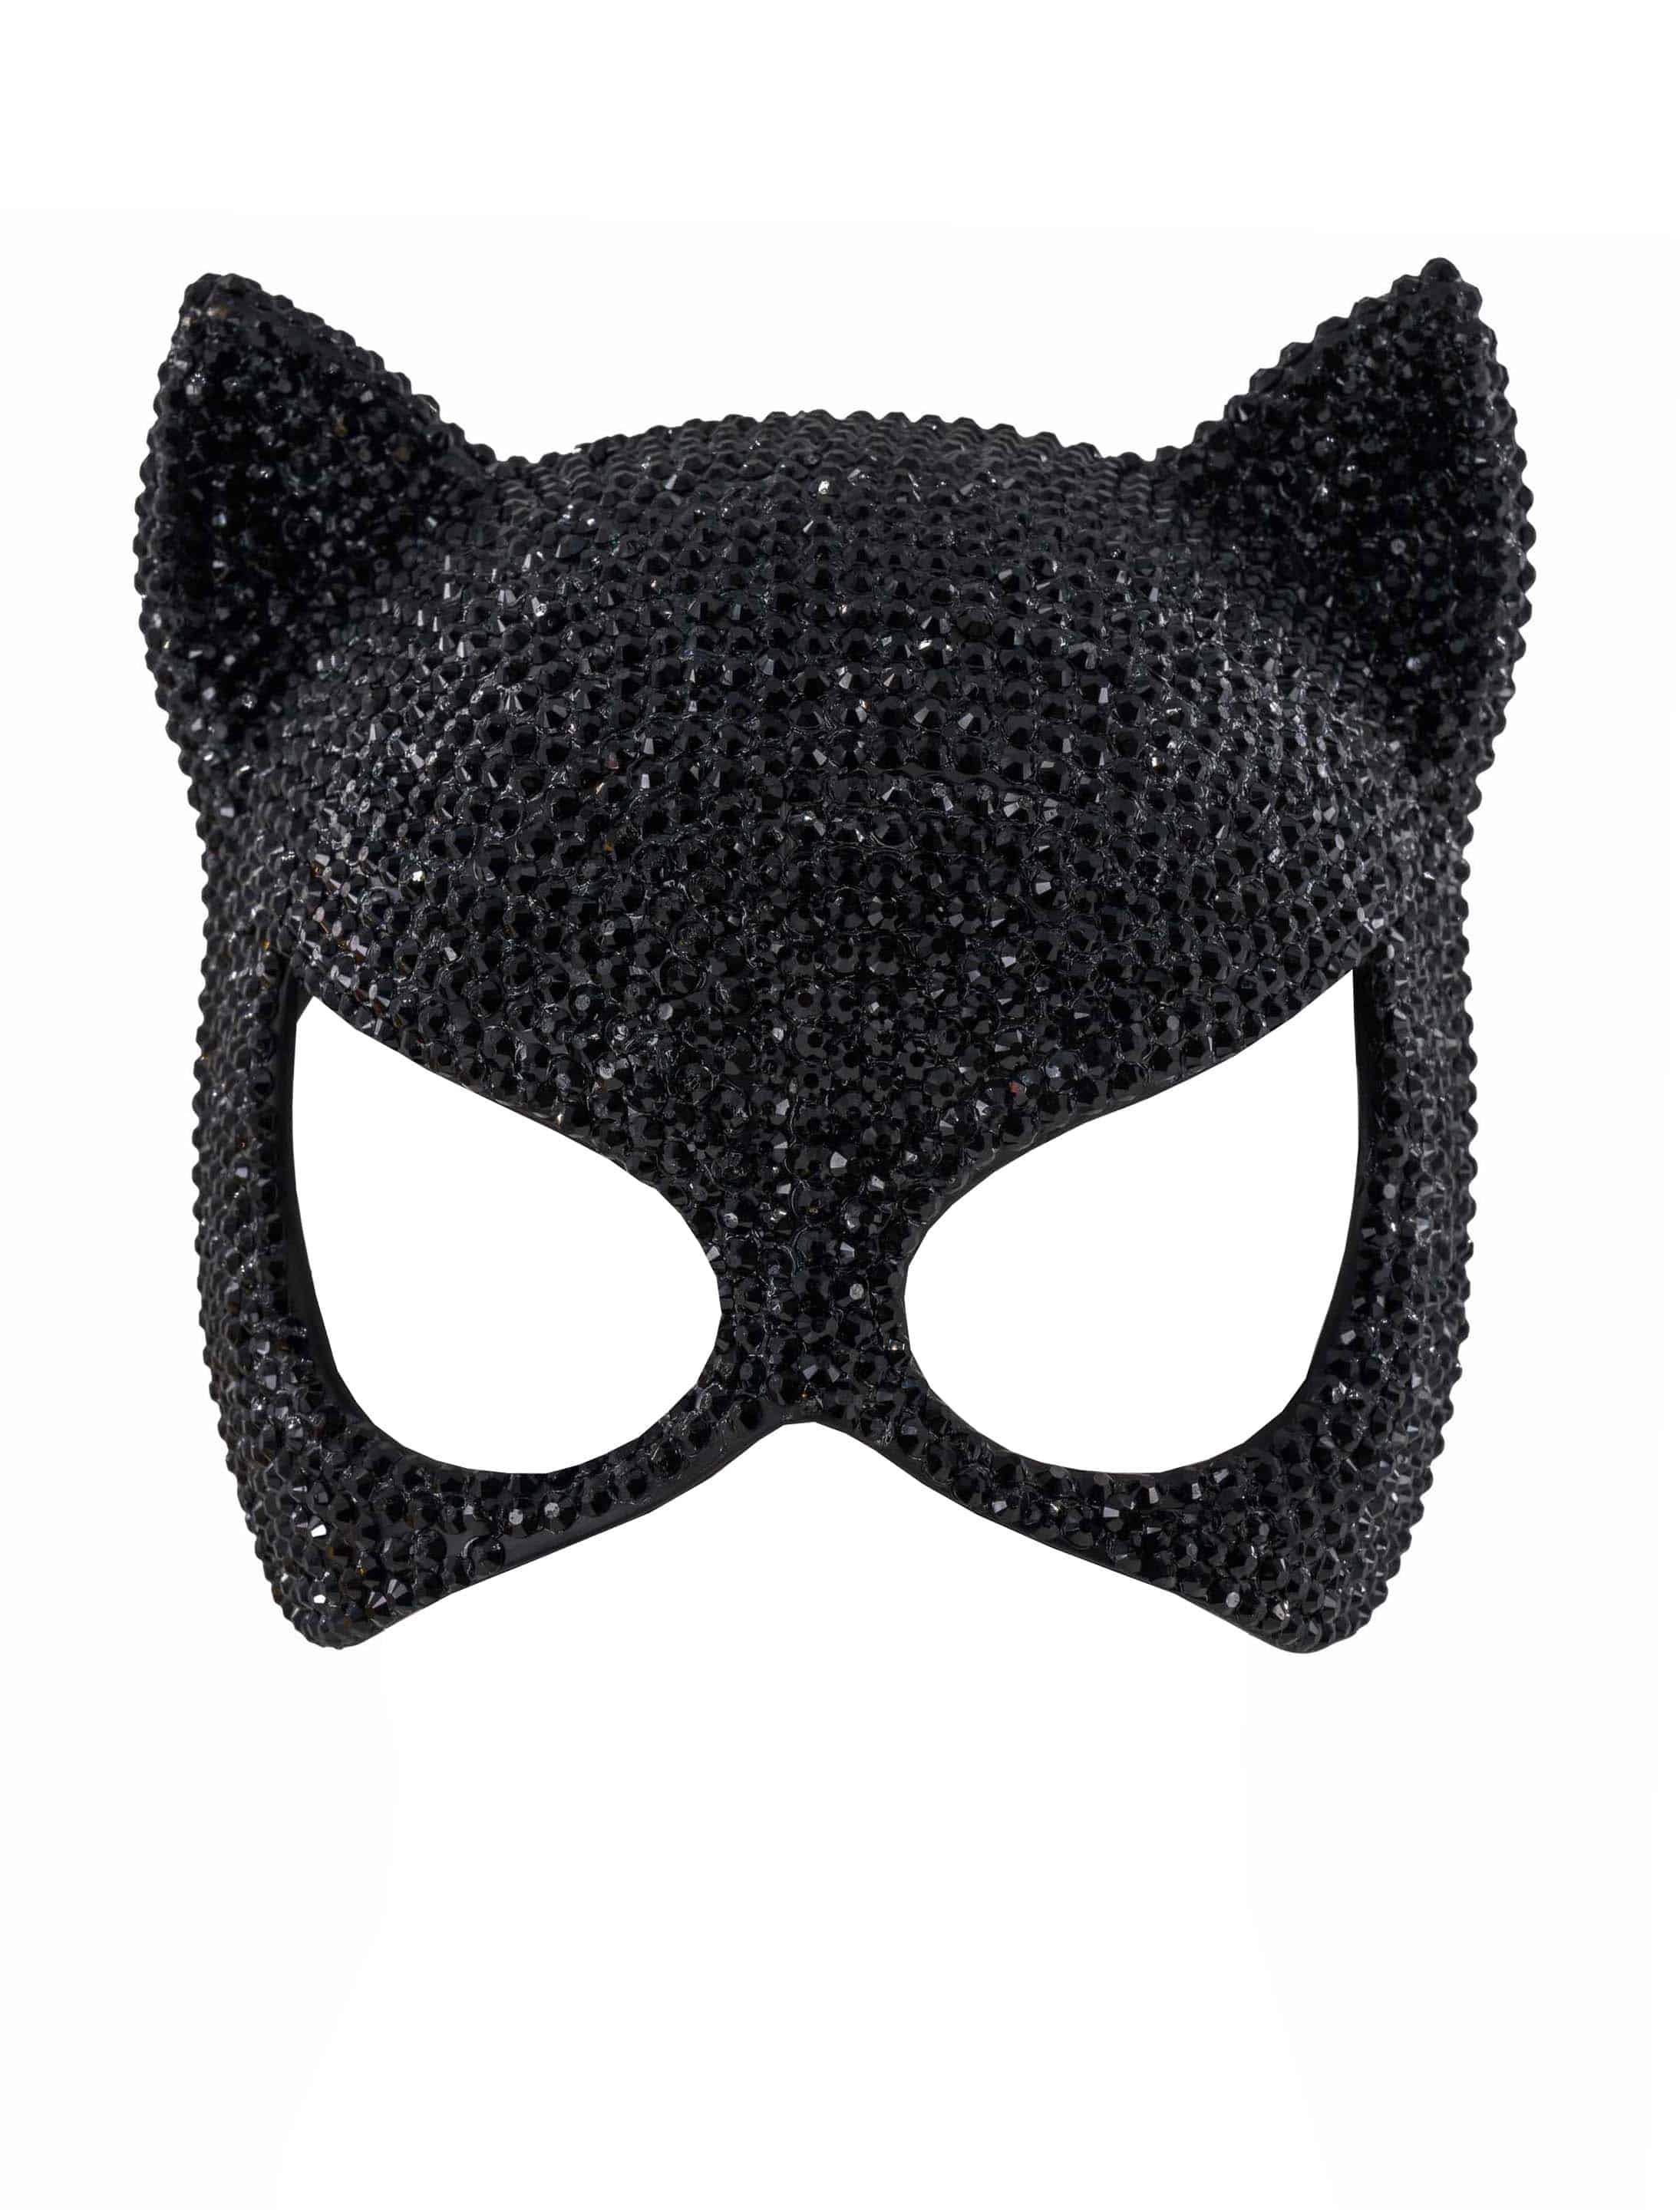 Maske Katze aus Strass schwarz